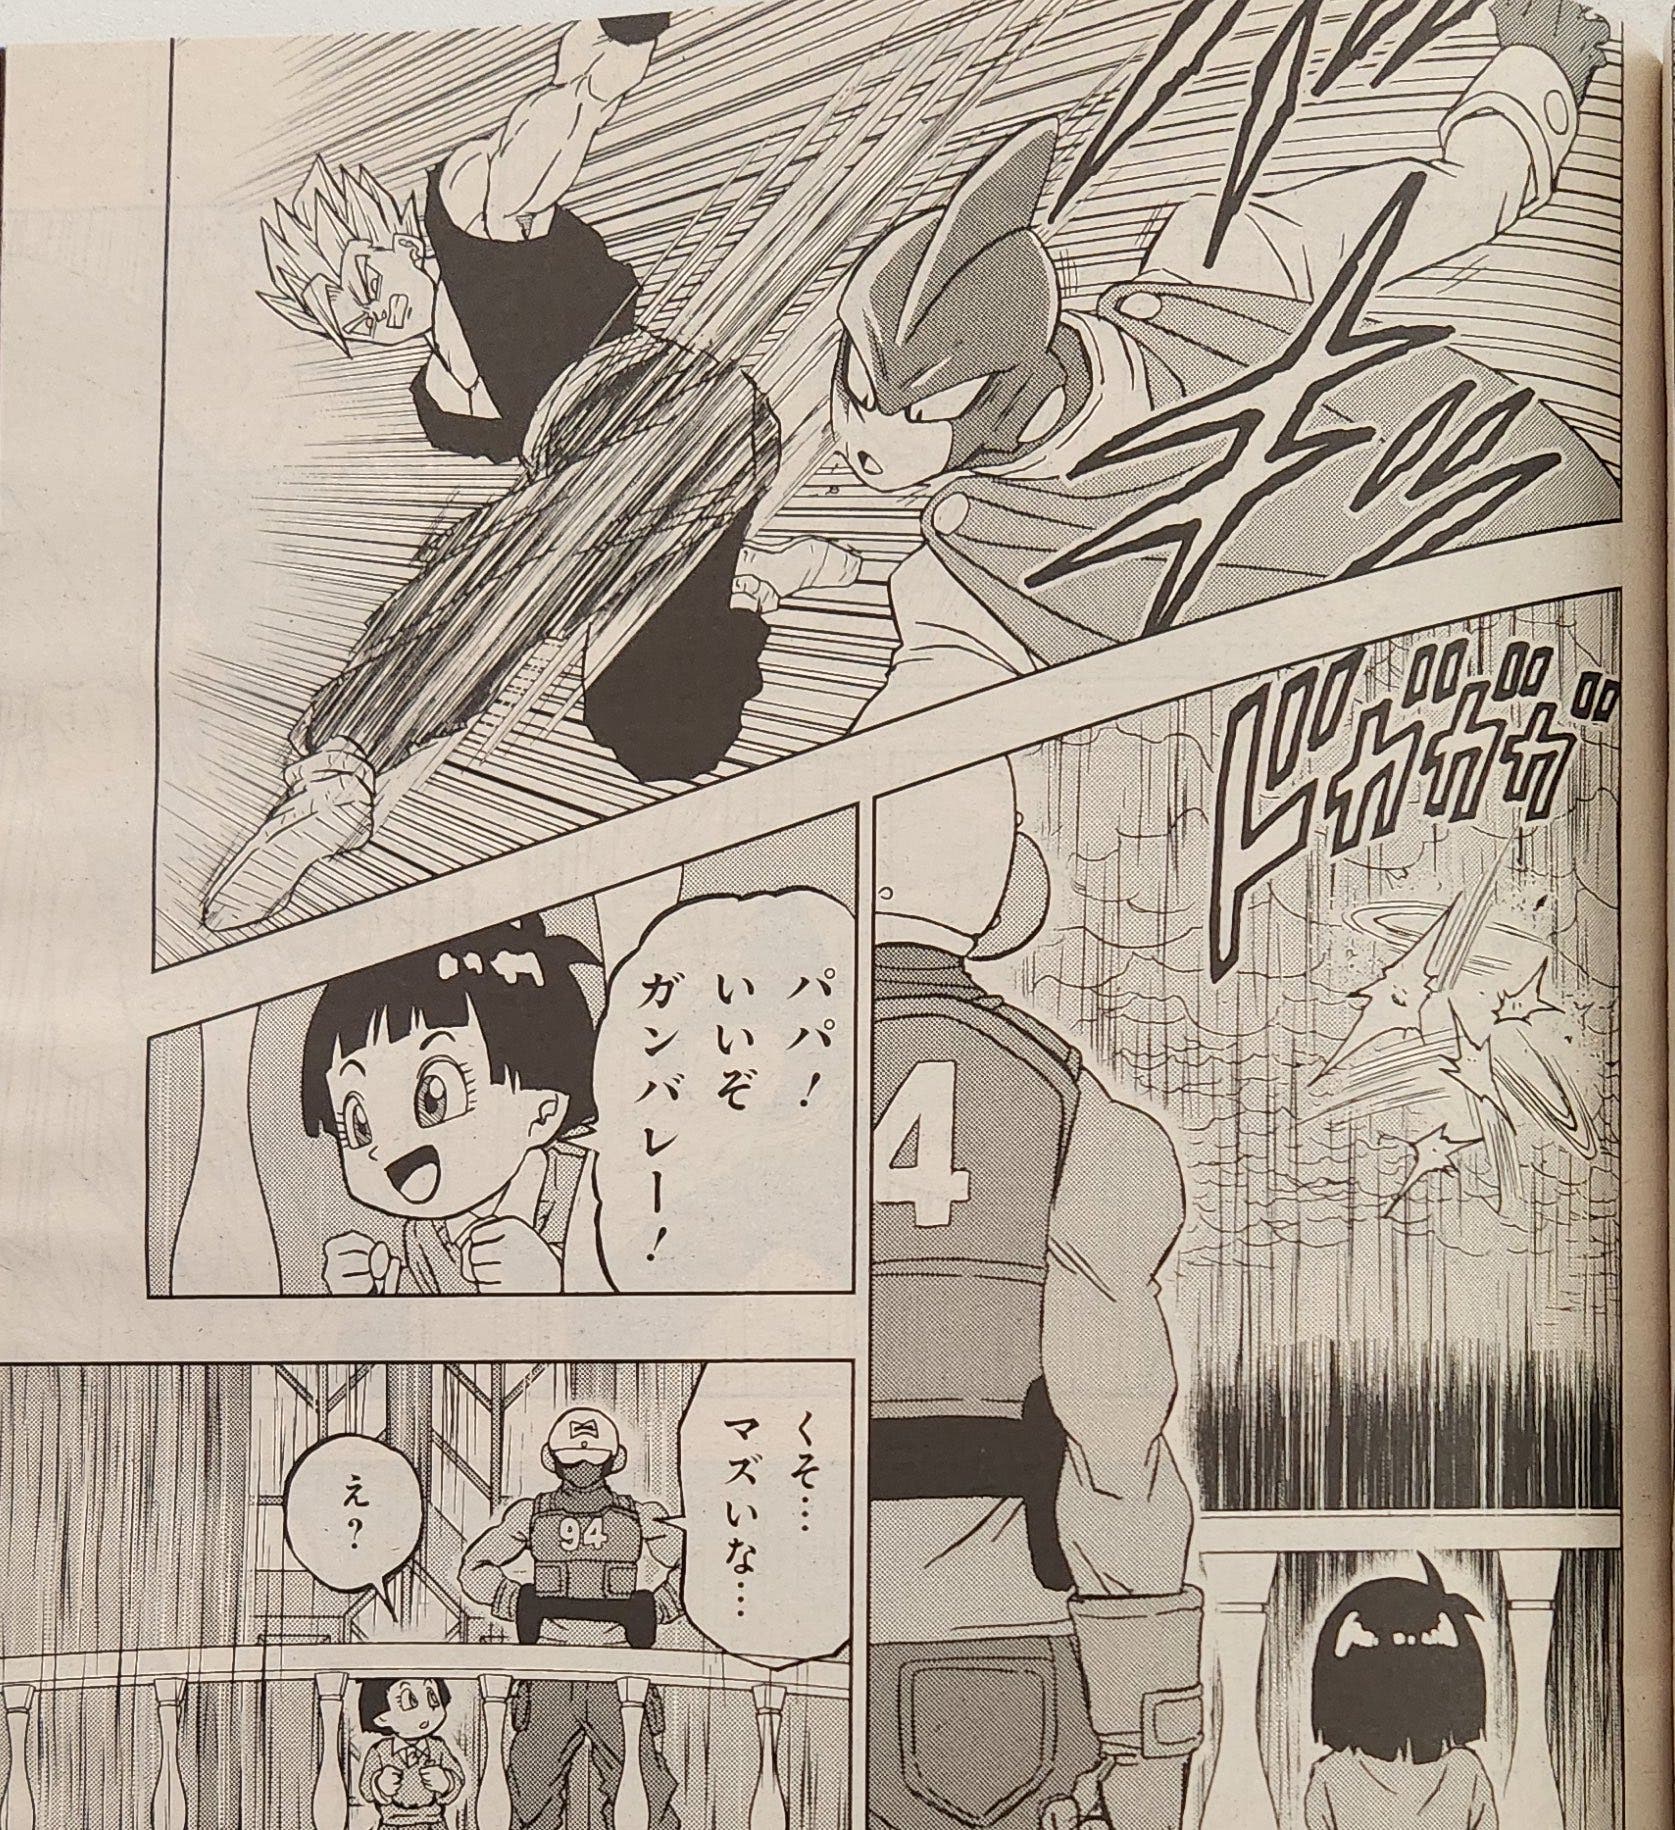 Dragon Ball Super: Filtrado al completo el capítulo 94 del manga